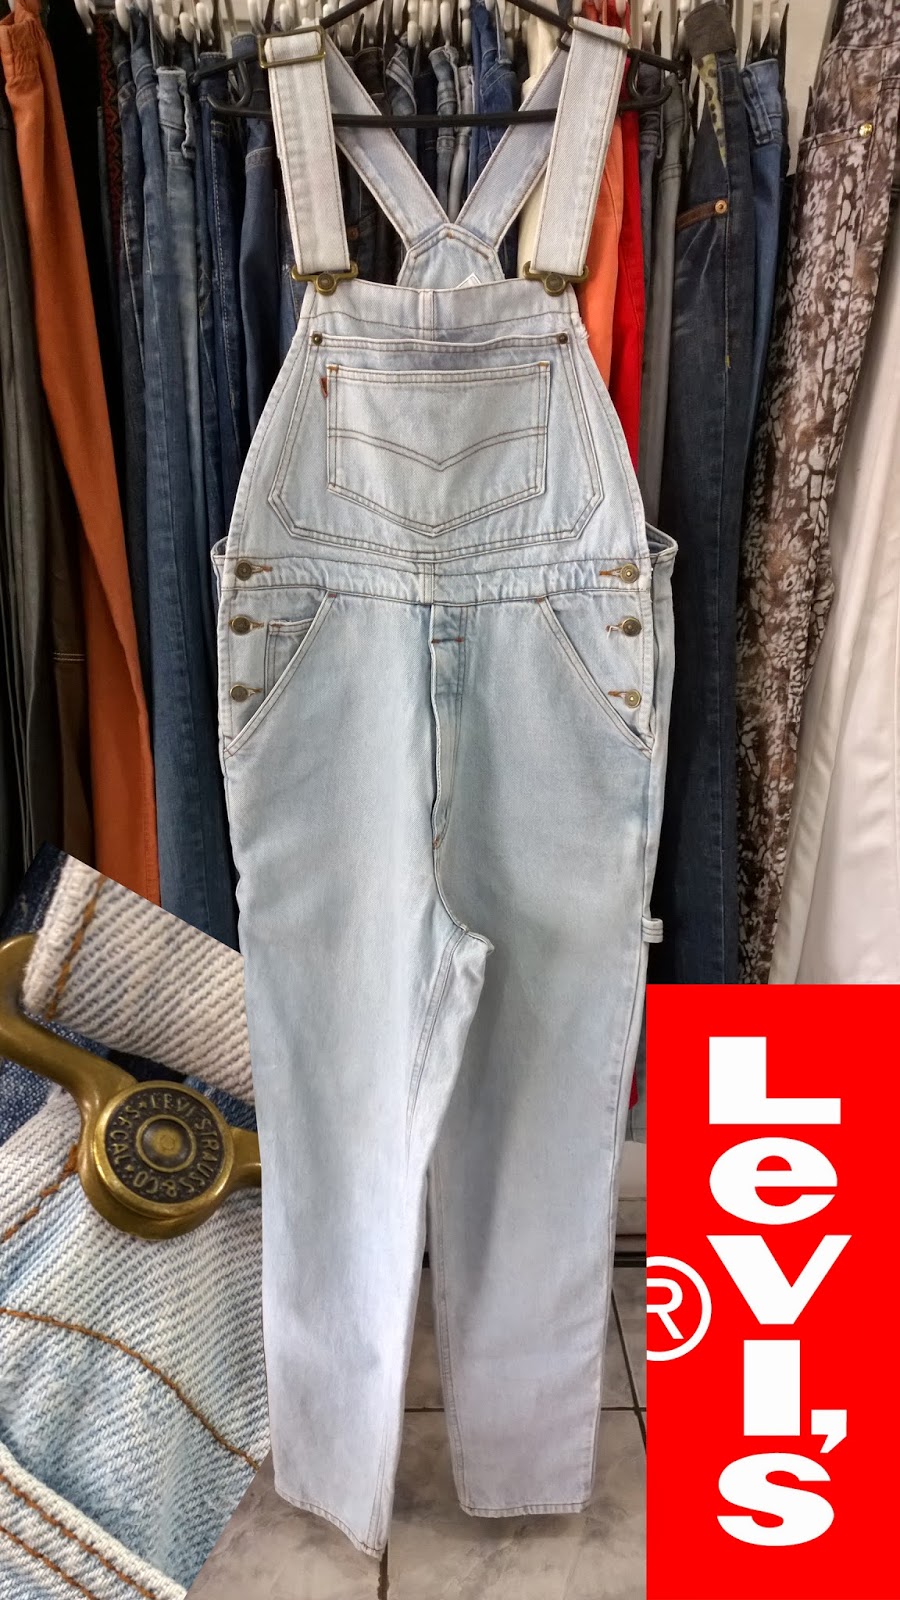 macacão jeans feminino levis